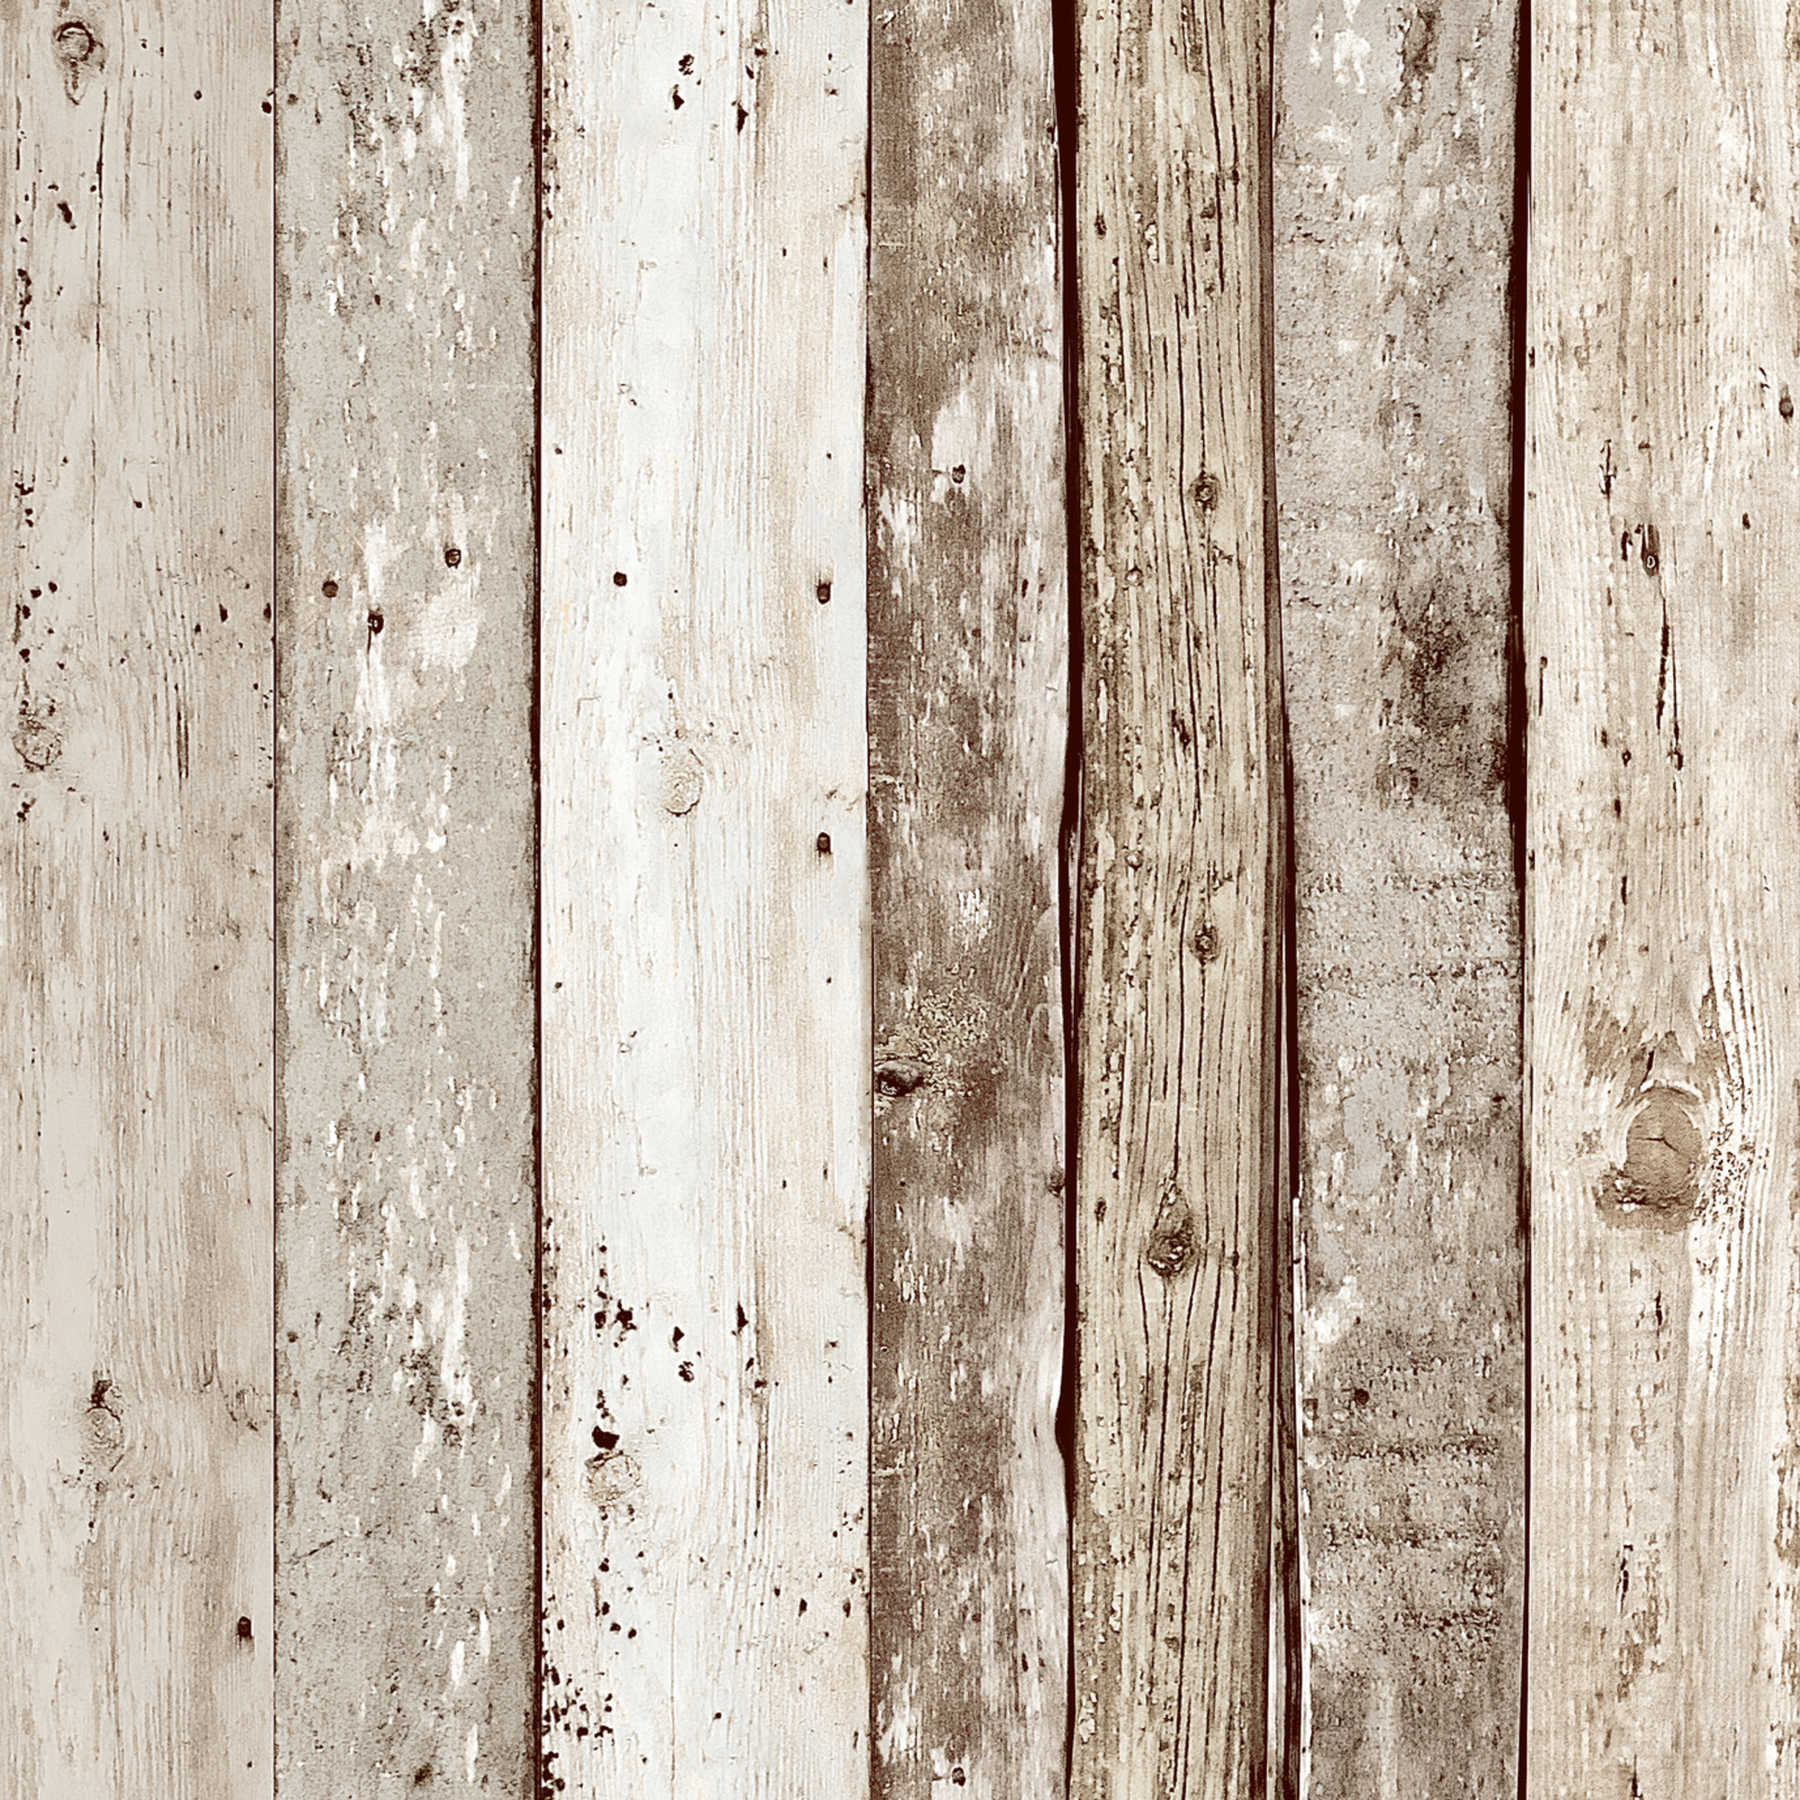             Papel pintado de estilo rústico con aspecto de madera vintage - marrón
        